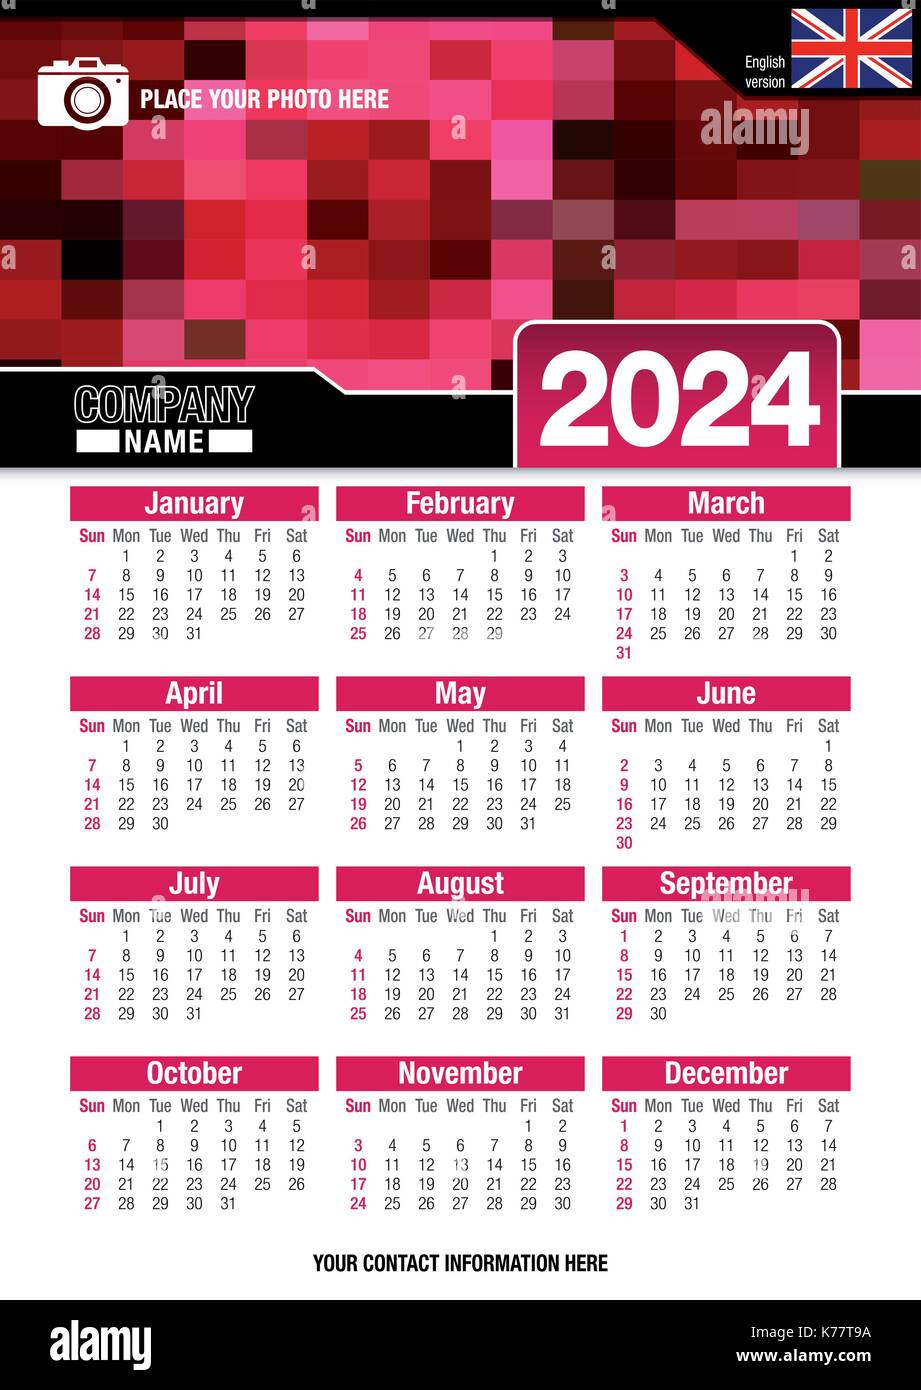 Utile calendario da parete 2024 con design di colori rosso mosaico. Formato A4 verticale. Dimensioni: 210mm x 297mm. Versione Inglese - immagine vettoriale Illustrazione Vettoriale